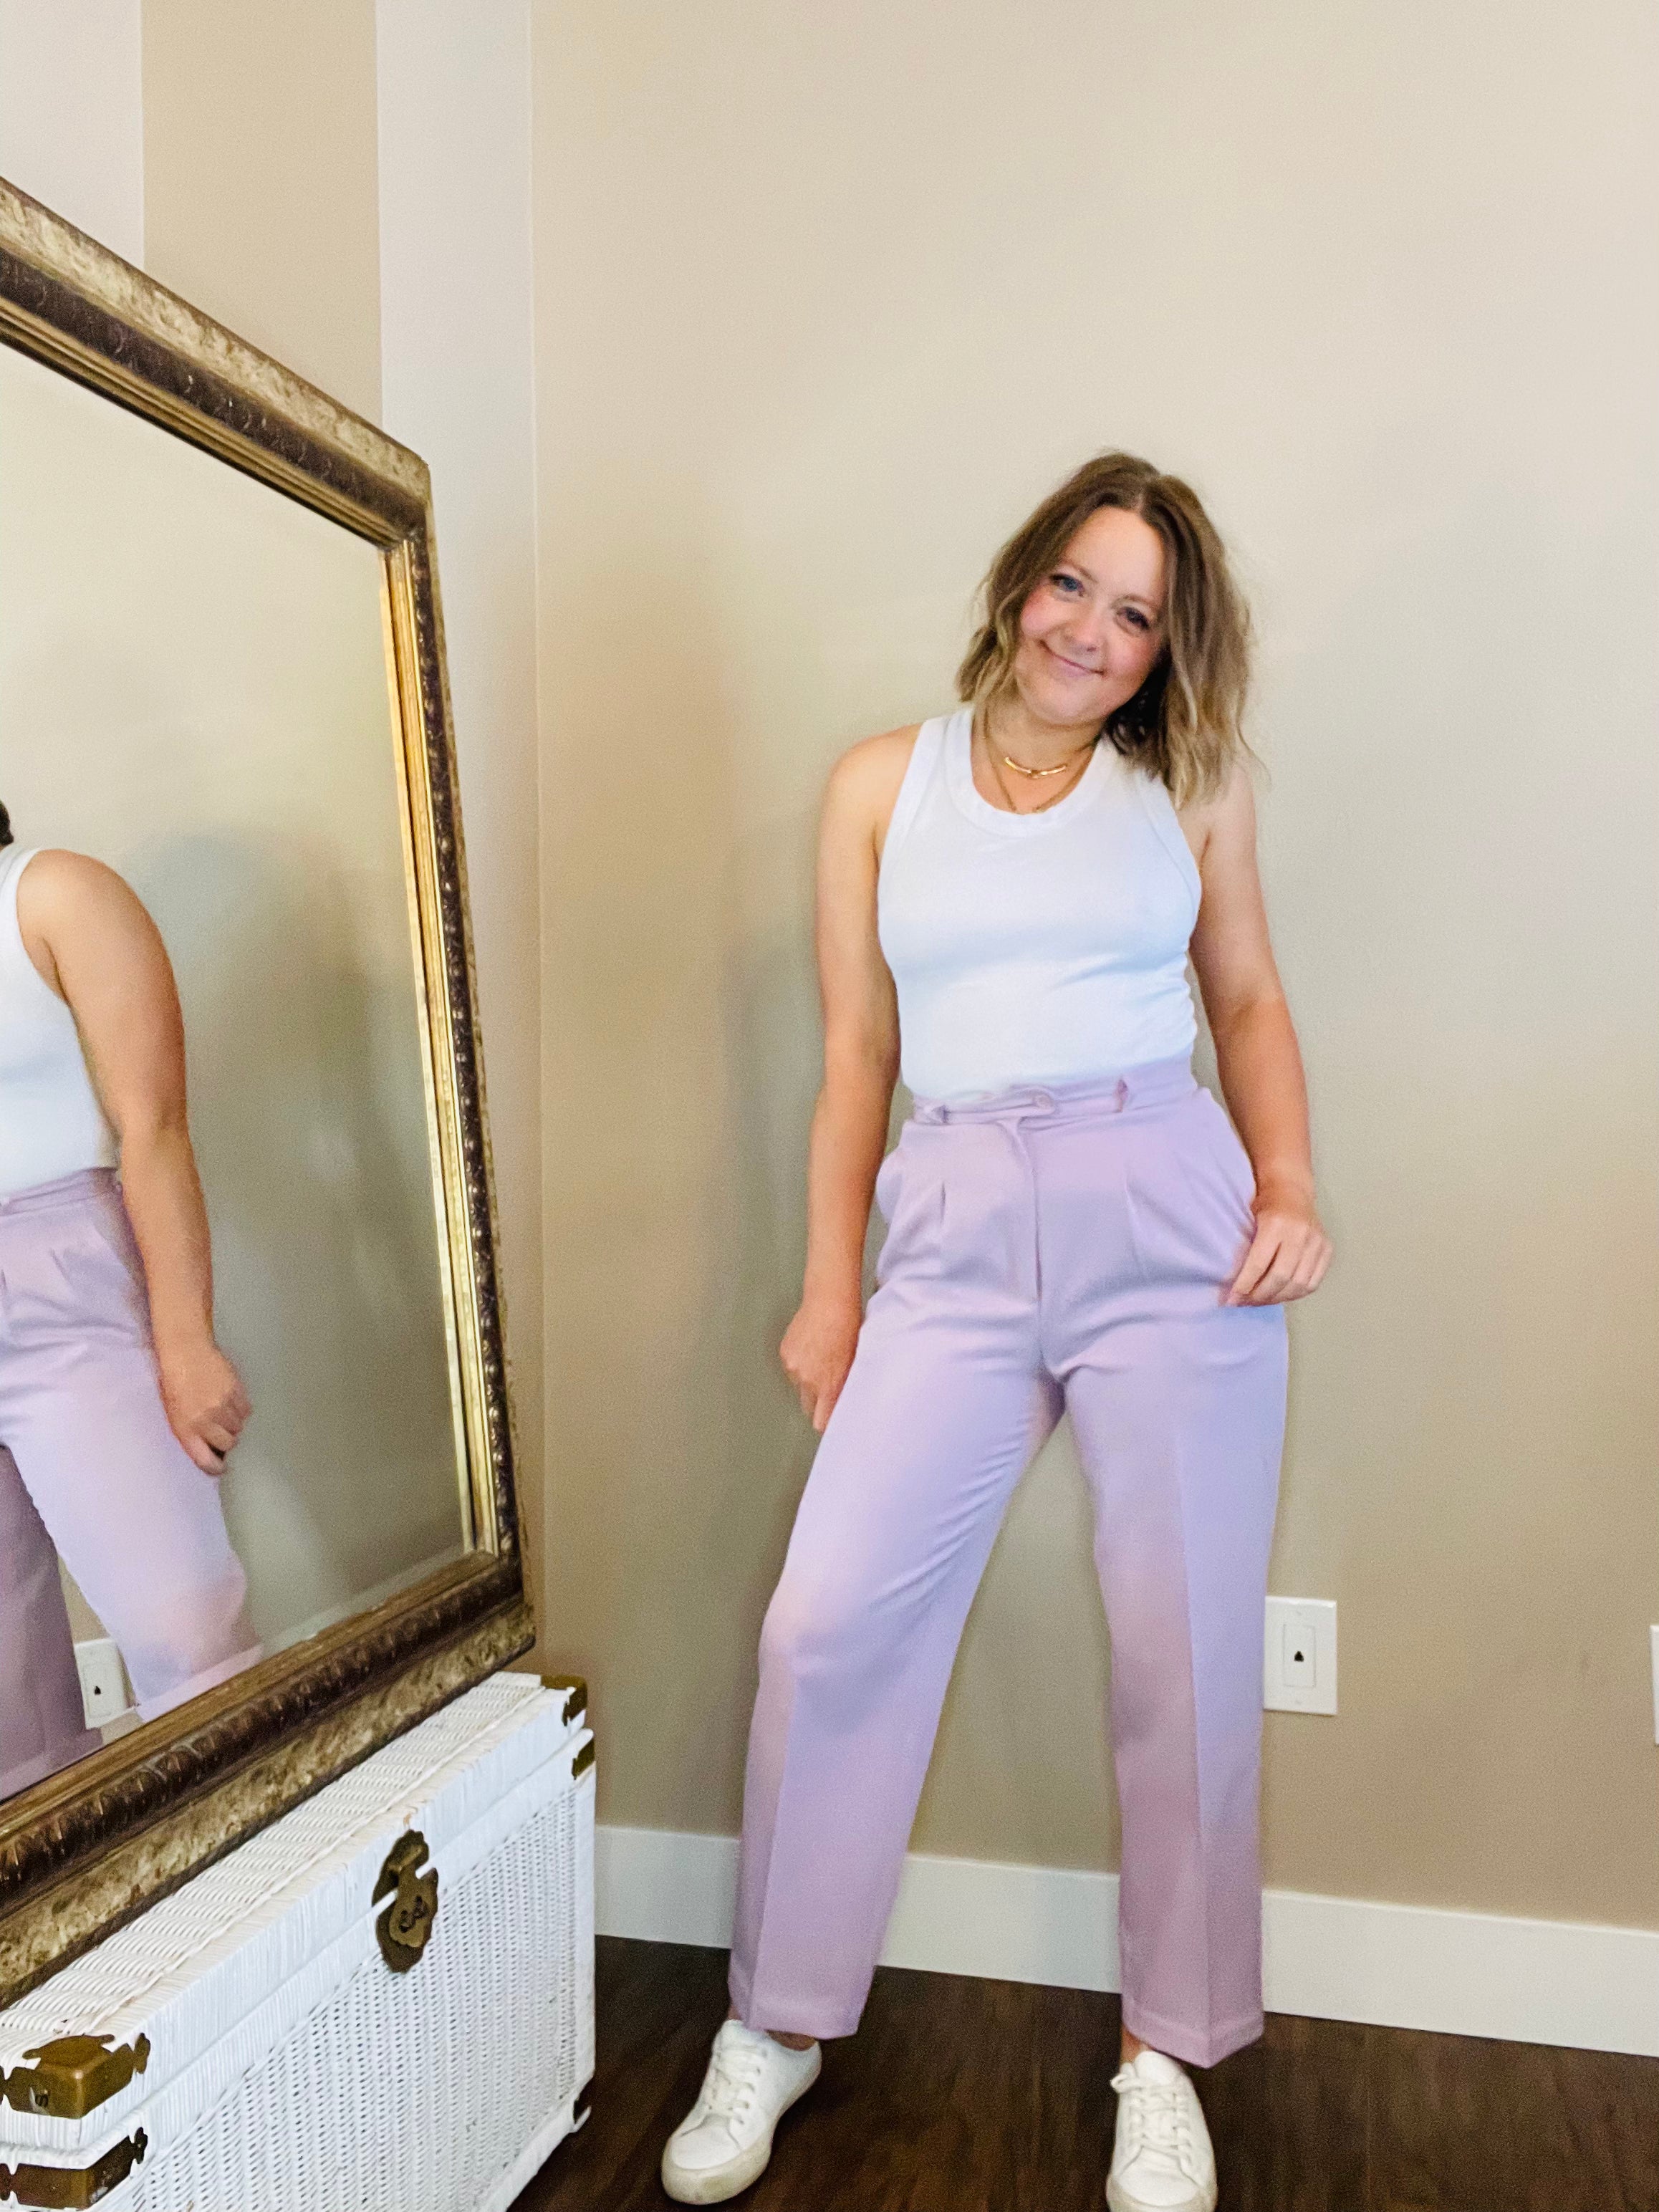 Lilac Vintage Pants Size: Vintage 10/11, best fit Modern Med